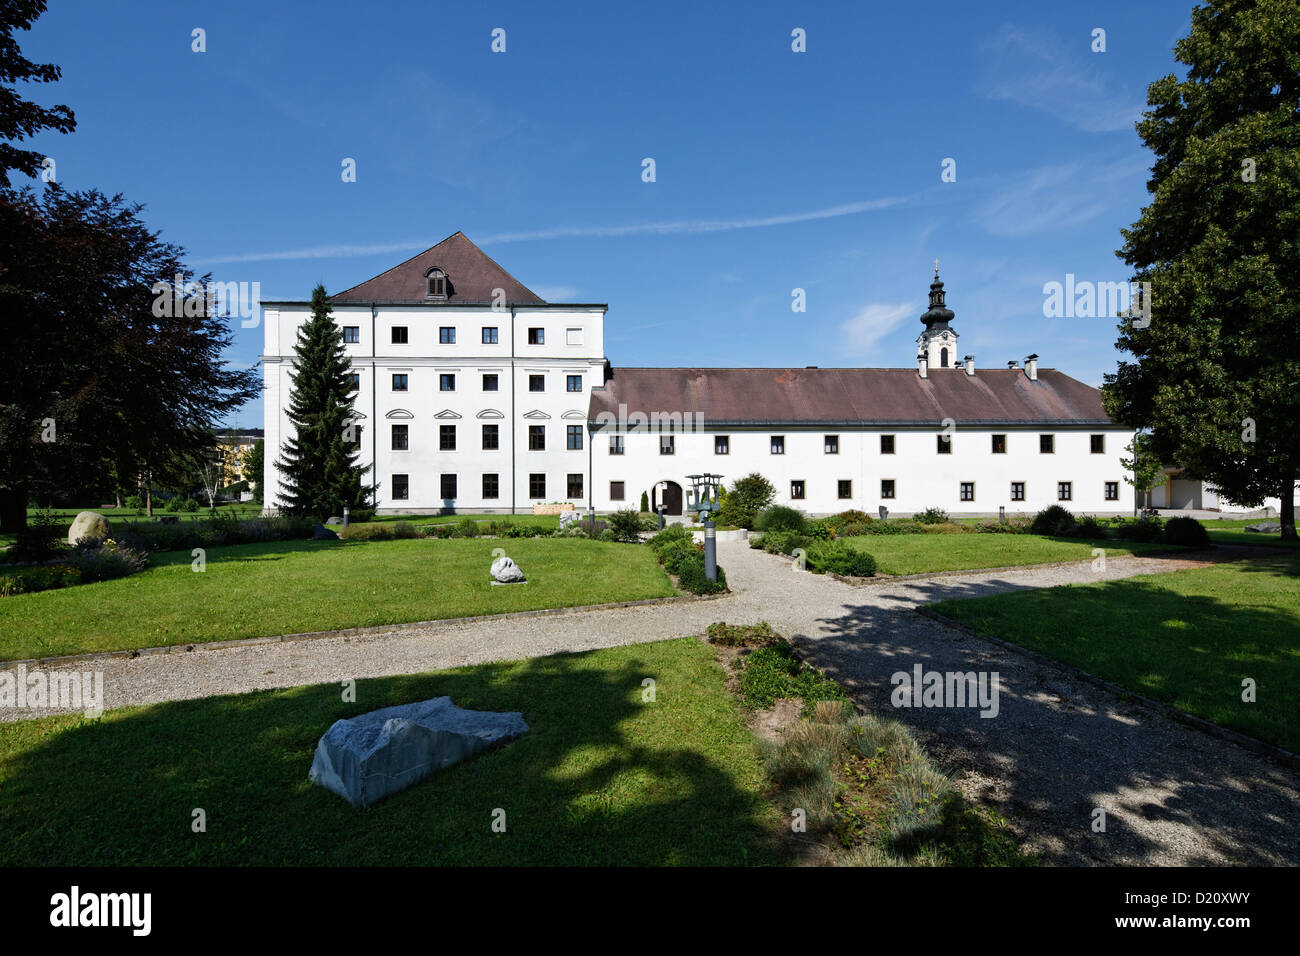 Austria, Upper Austria, View of castle  Zell an der Pram Stock Photo